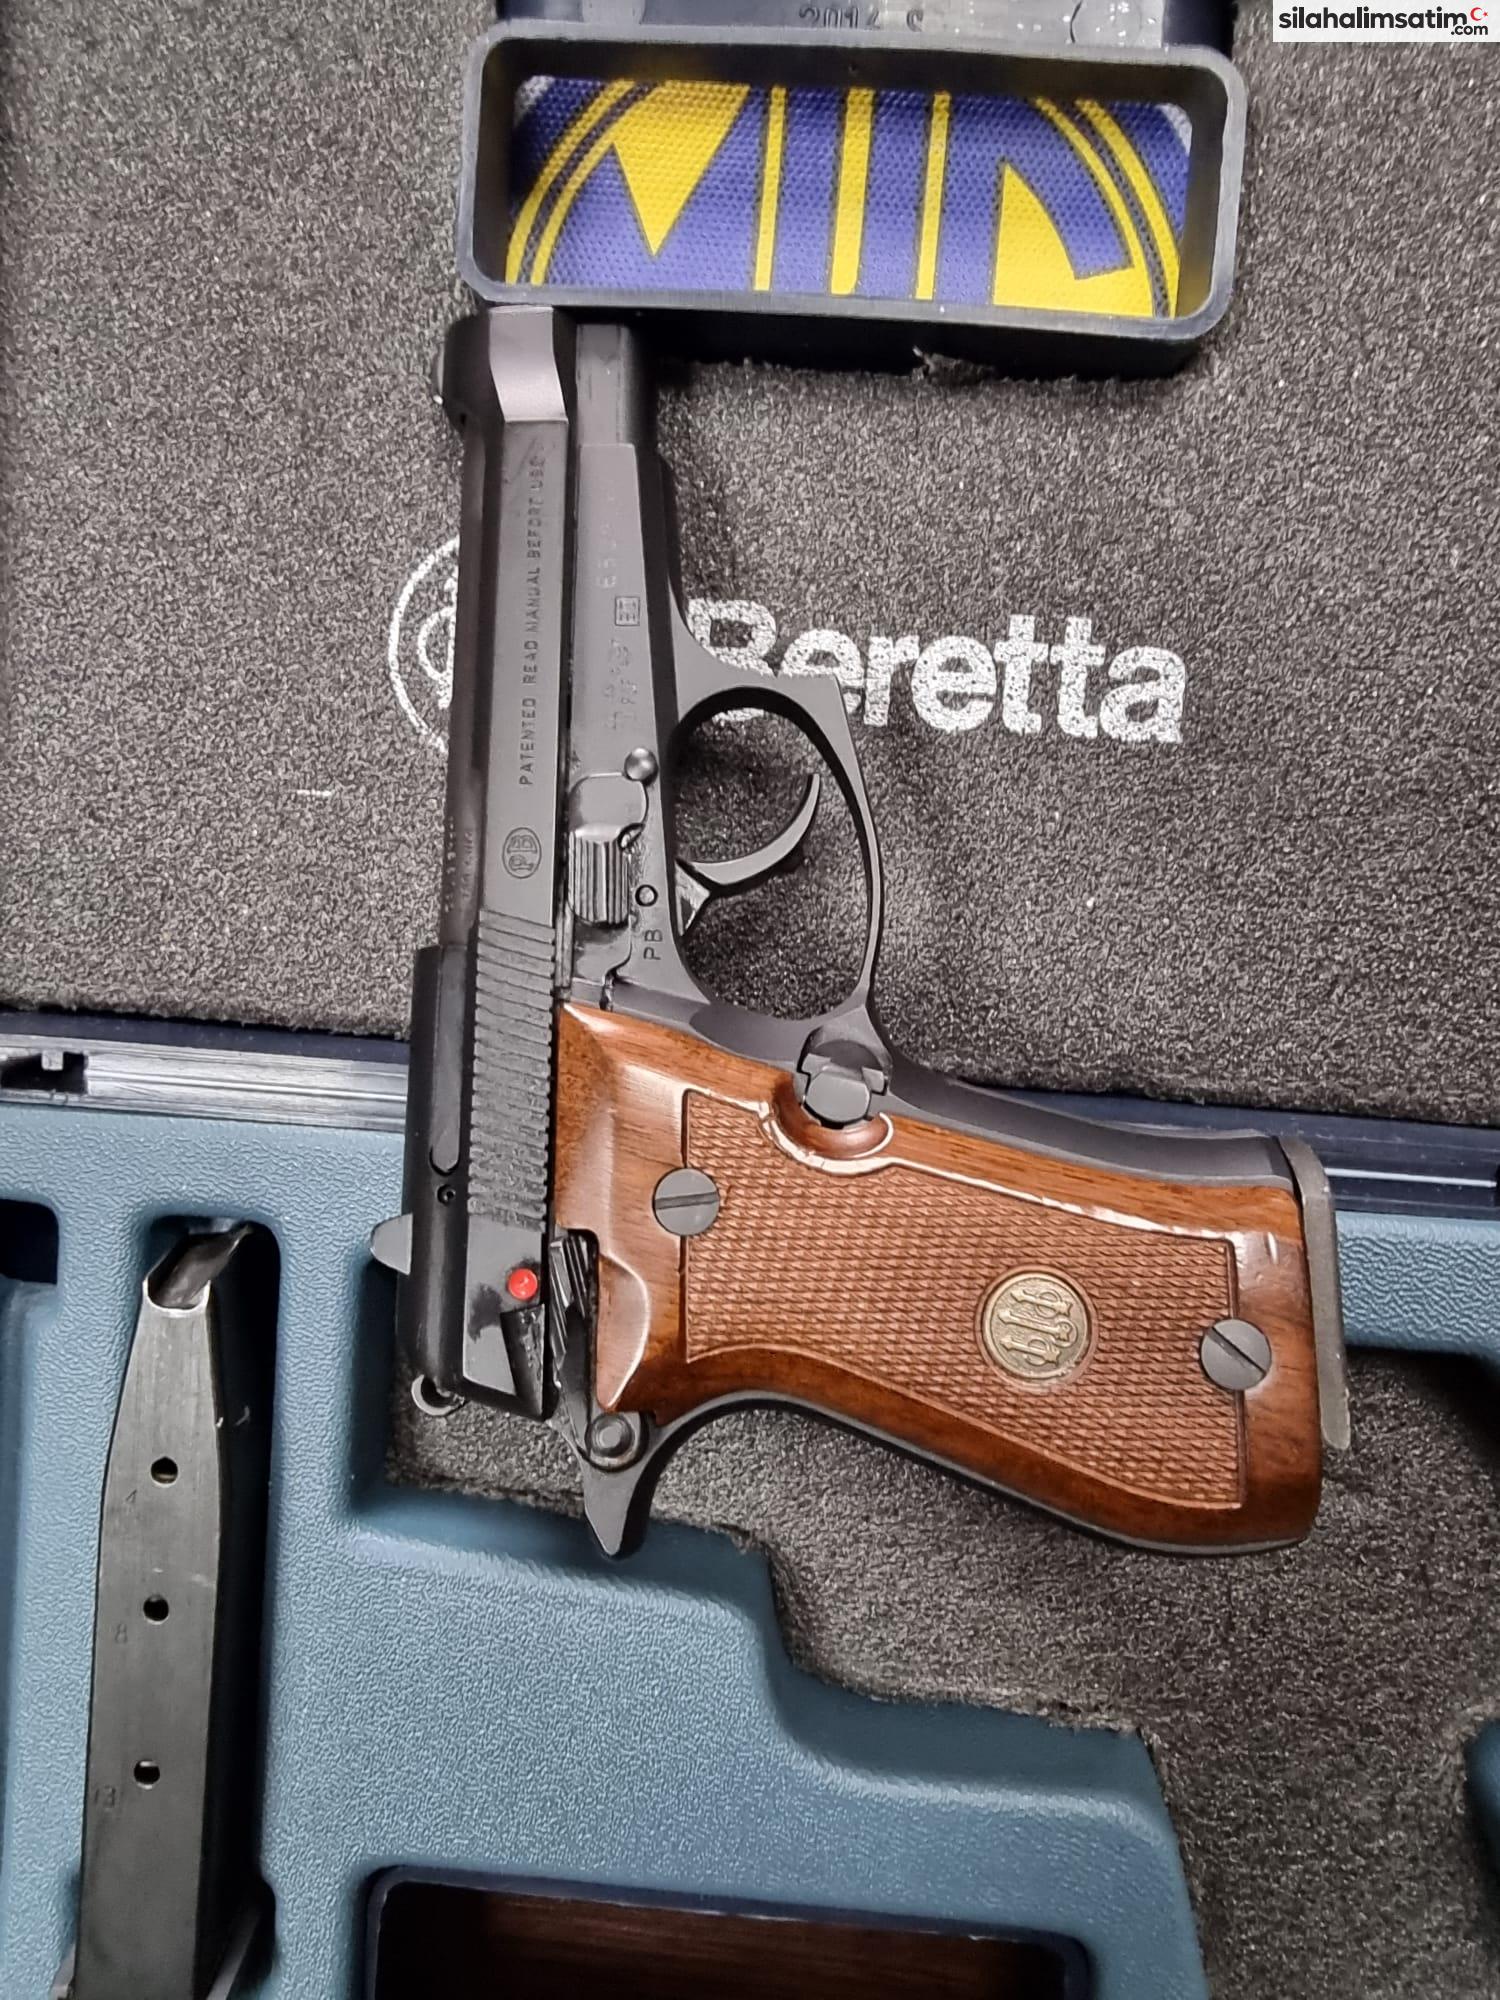 Beretta F84 (9X17 MM)